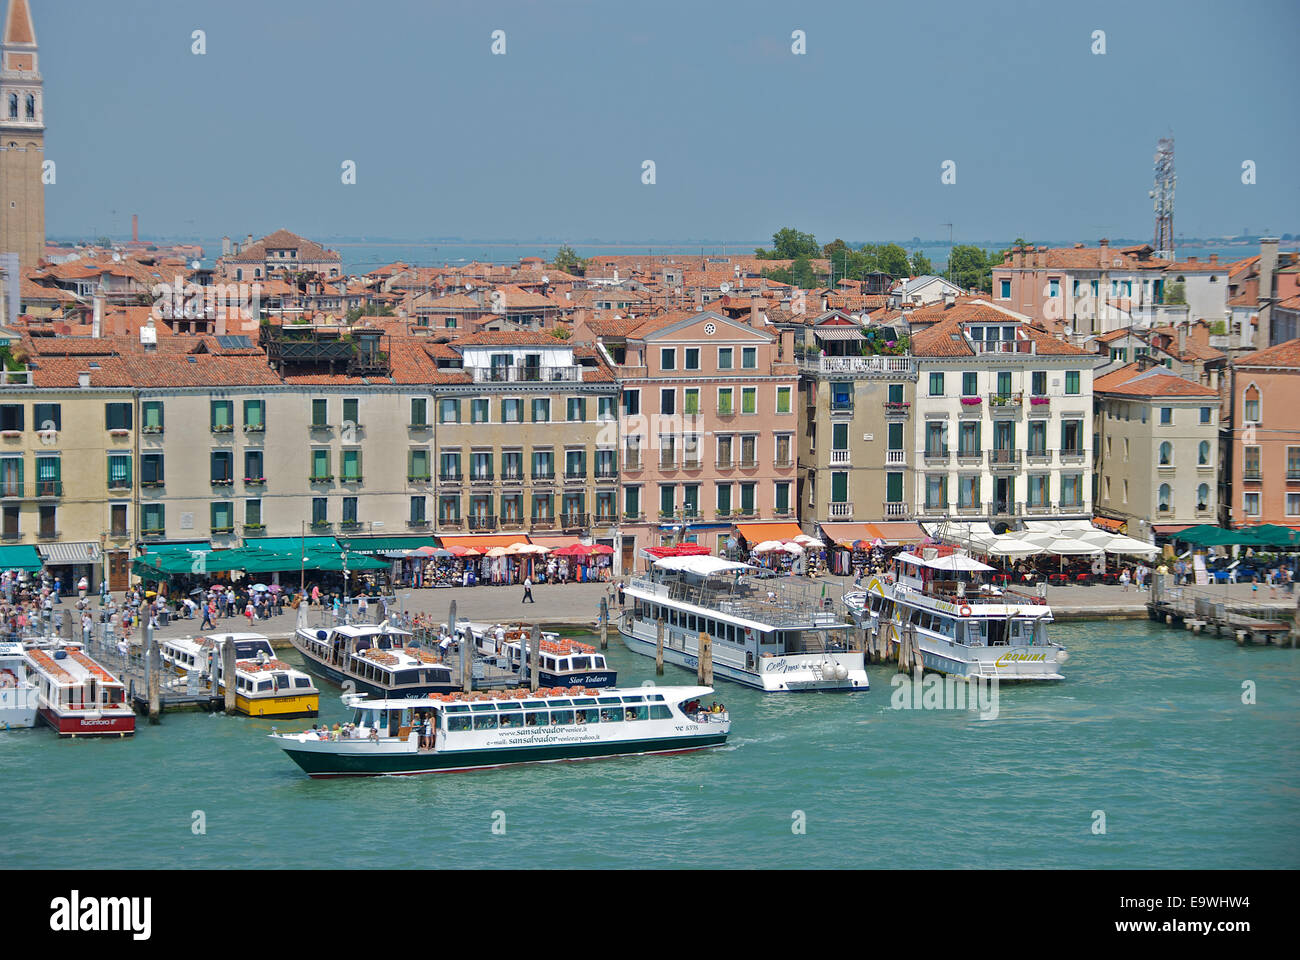 La città di Venezia vista dall'acqua Foto Stock